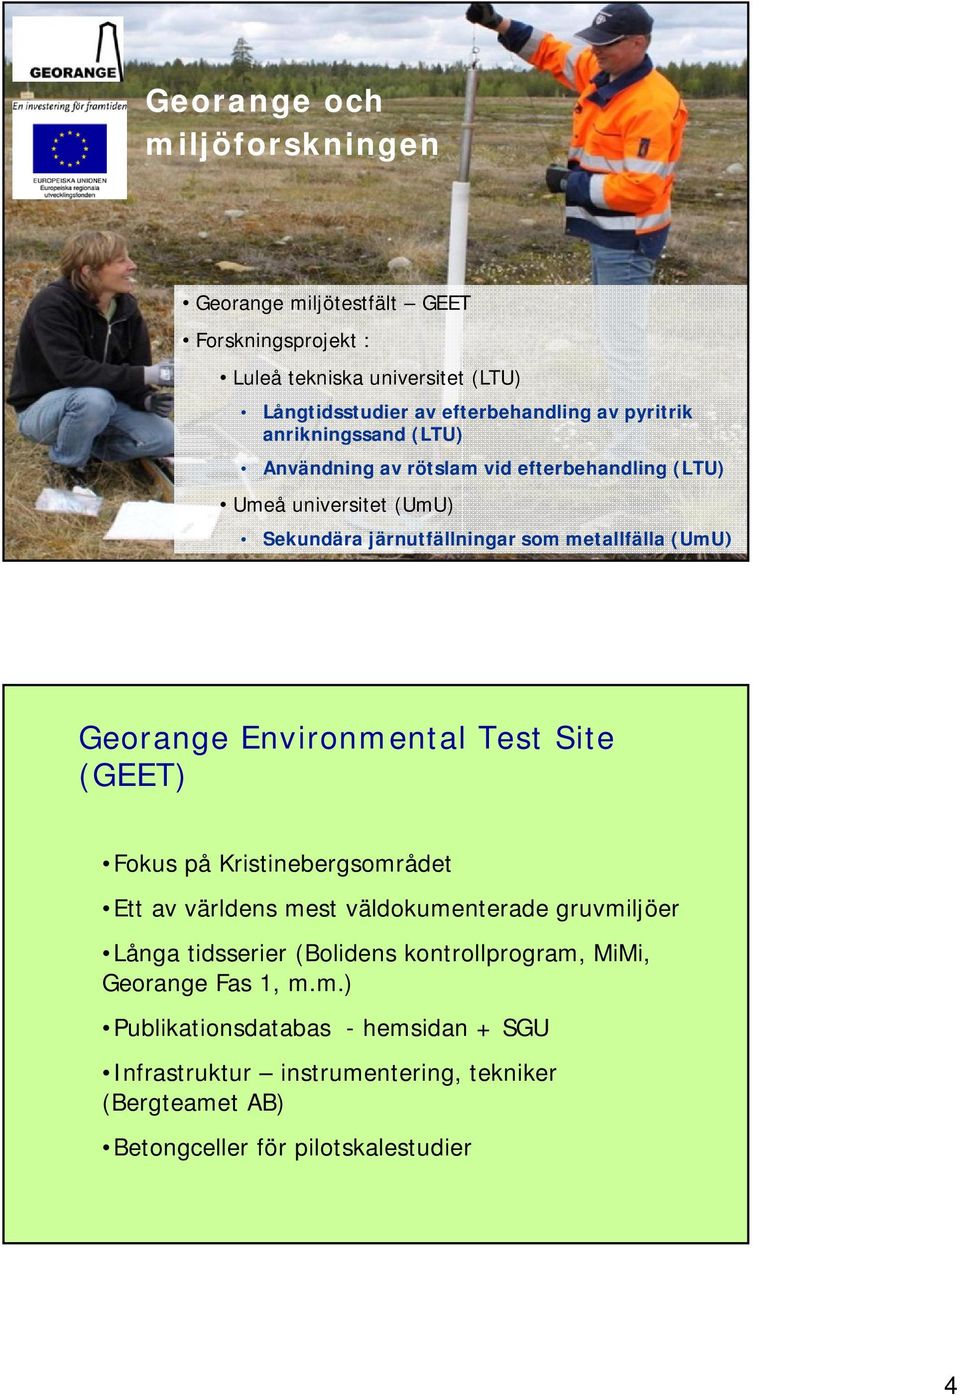 Georange Environmental Test Site (GEET) Fokus på Kristinebergsområdet Ett av världens mest väldokumenterade gruvmiljöer Långa tidsserier (Bolidens